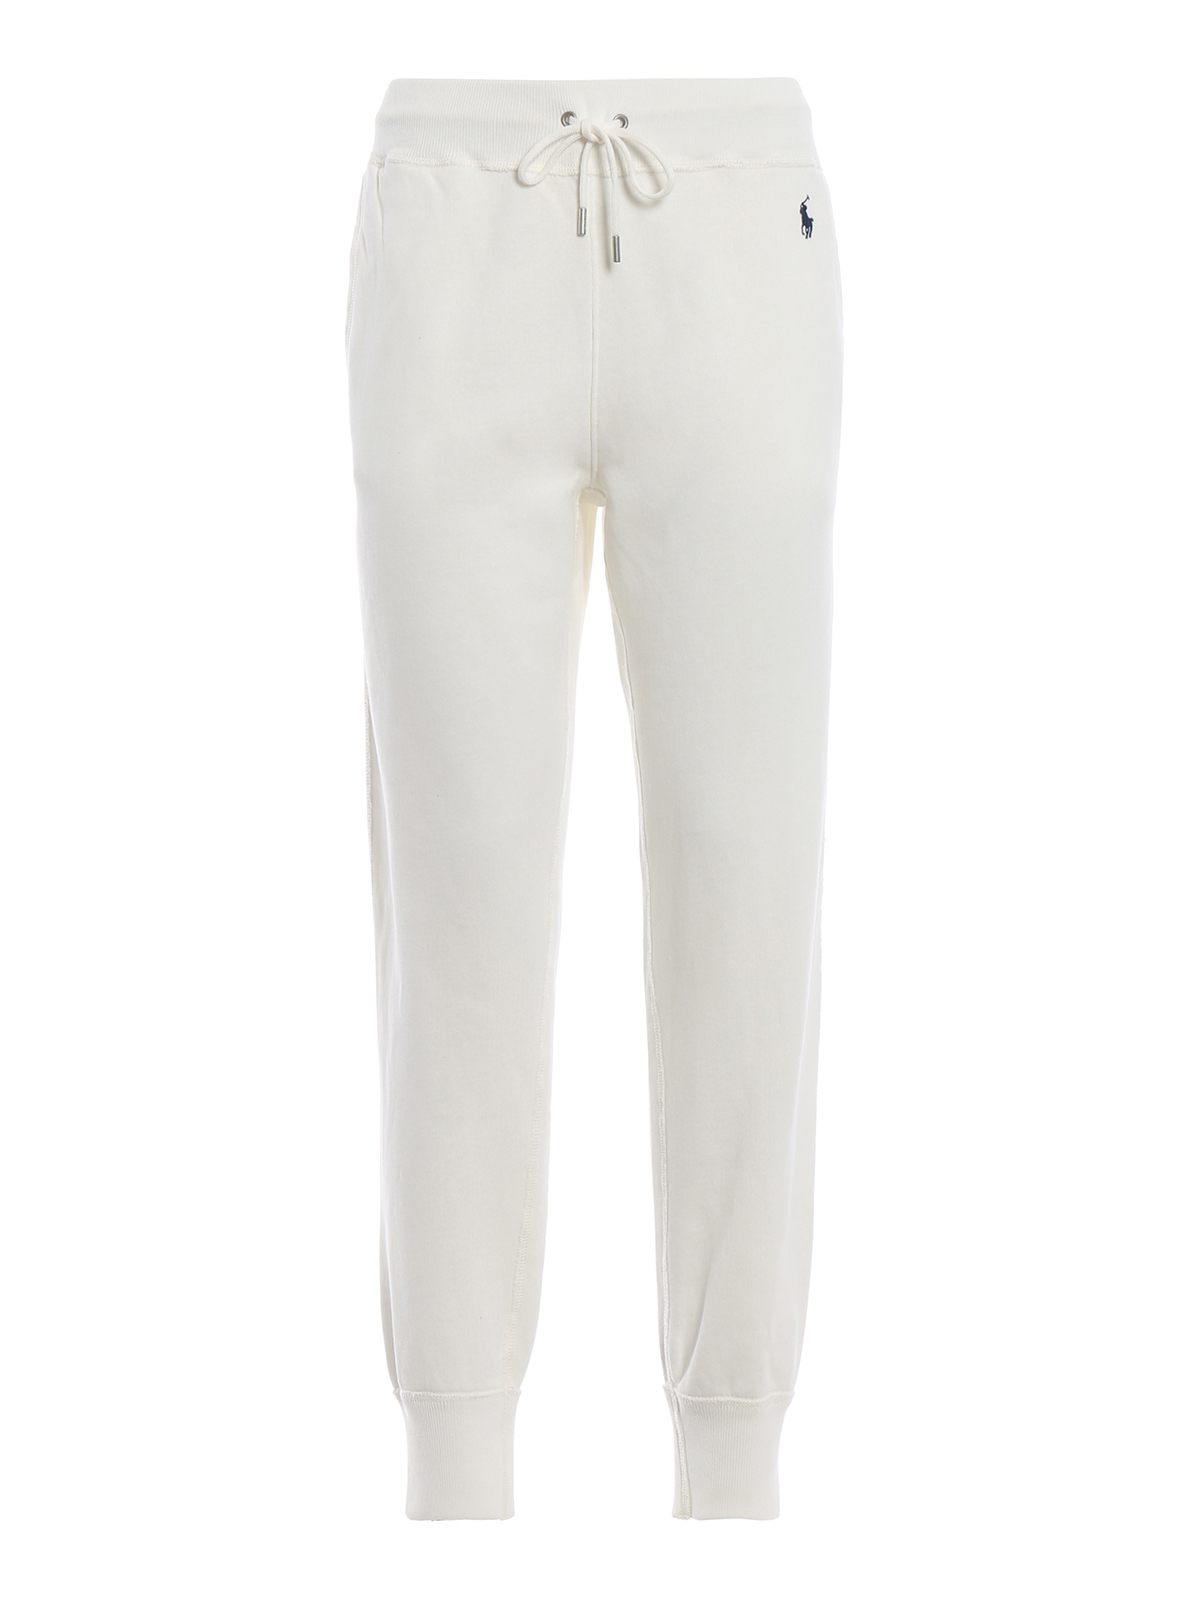 Tracksuit bottoms Polo Ralph Lauren - White cotton fleece tracksuit bottoms  - 211704858002